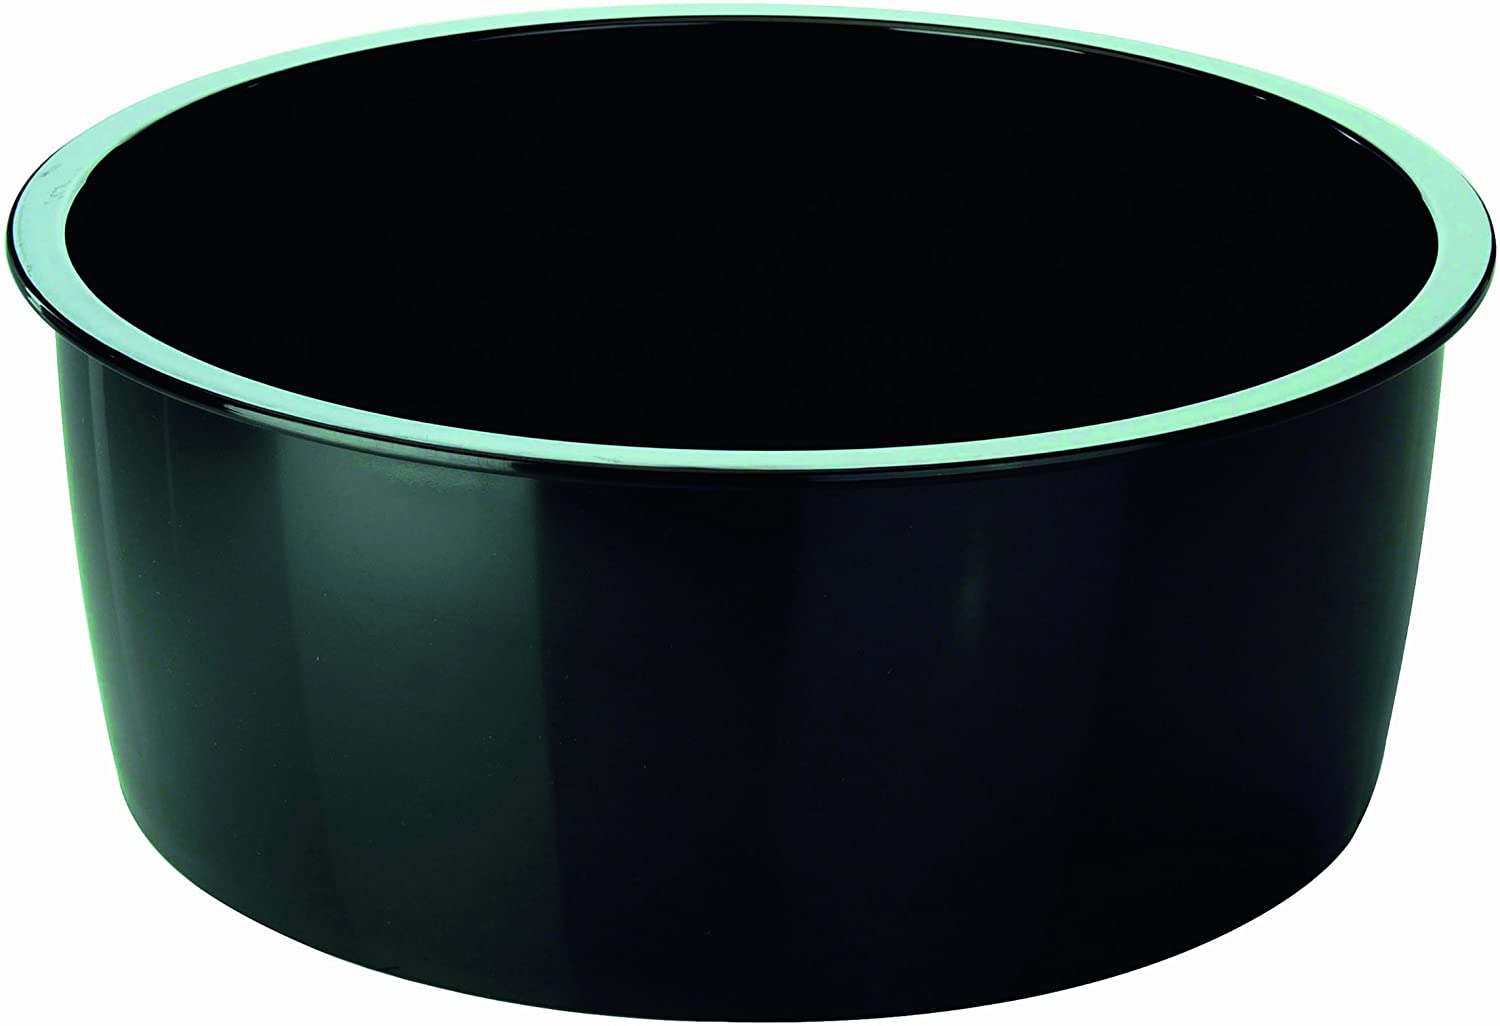 Kuhn Rikon Hotpan Bowl, 18cm, 2.0L, Black